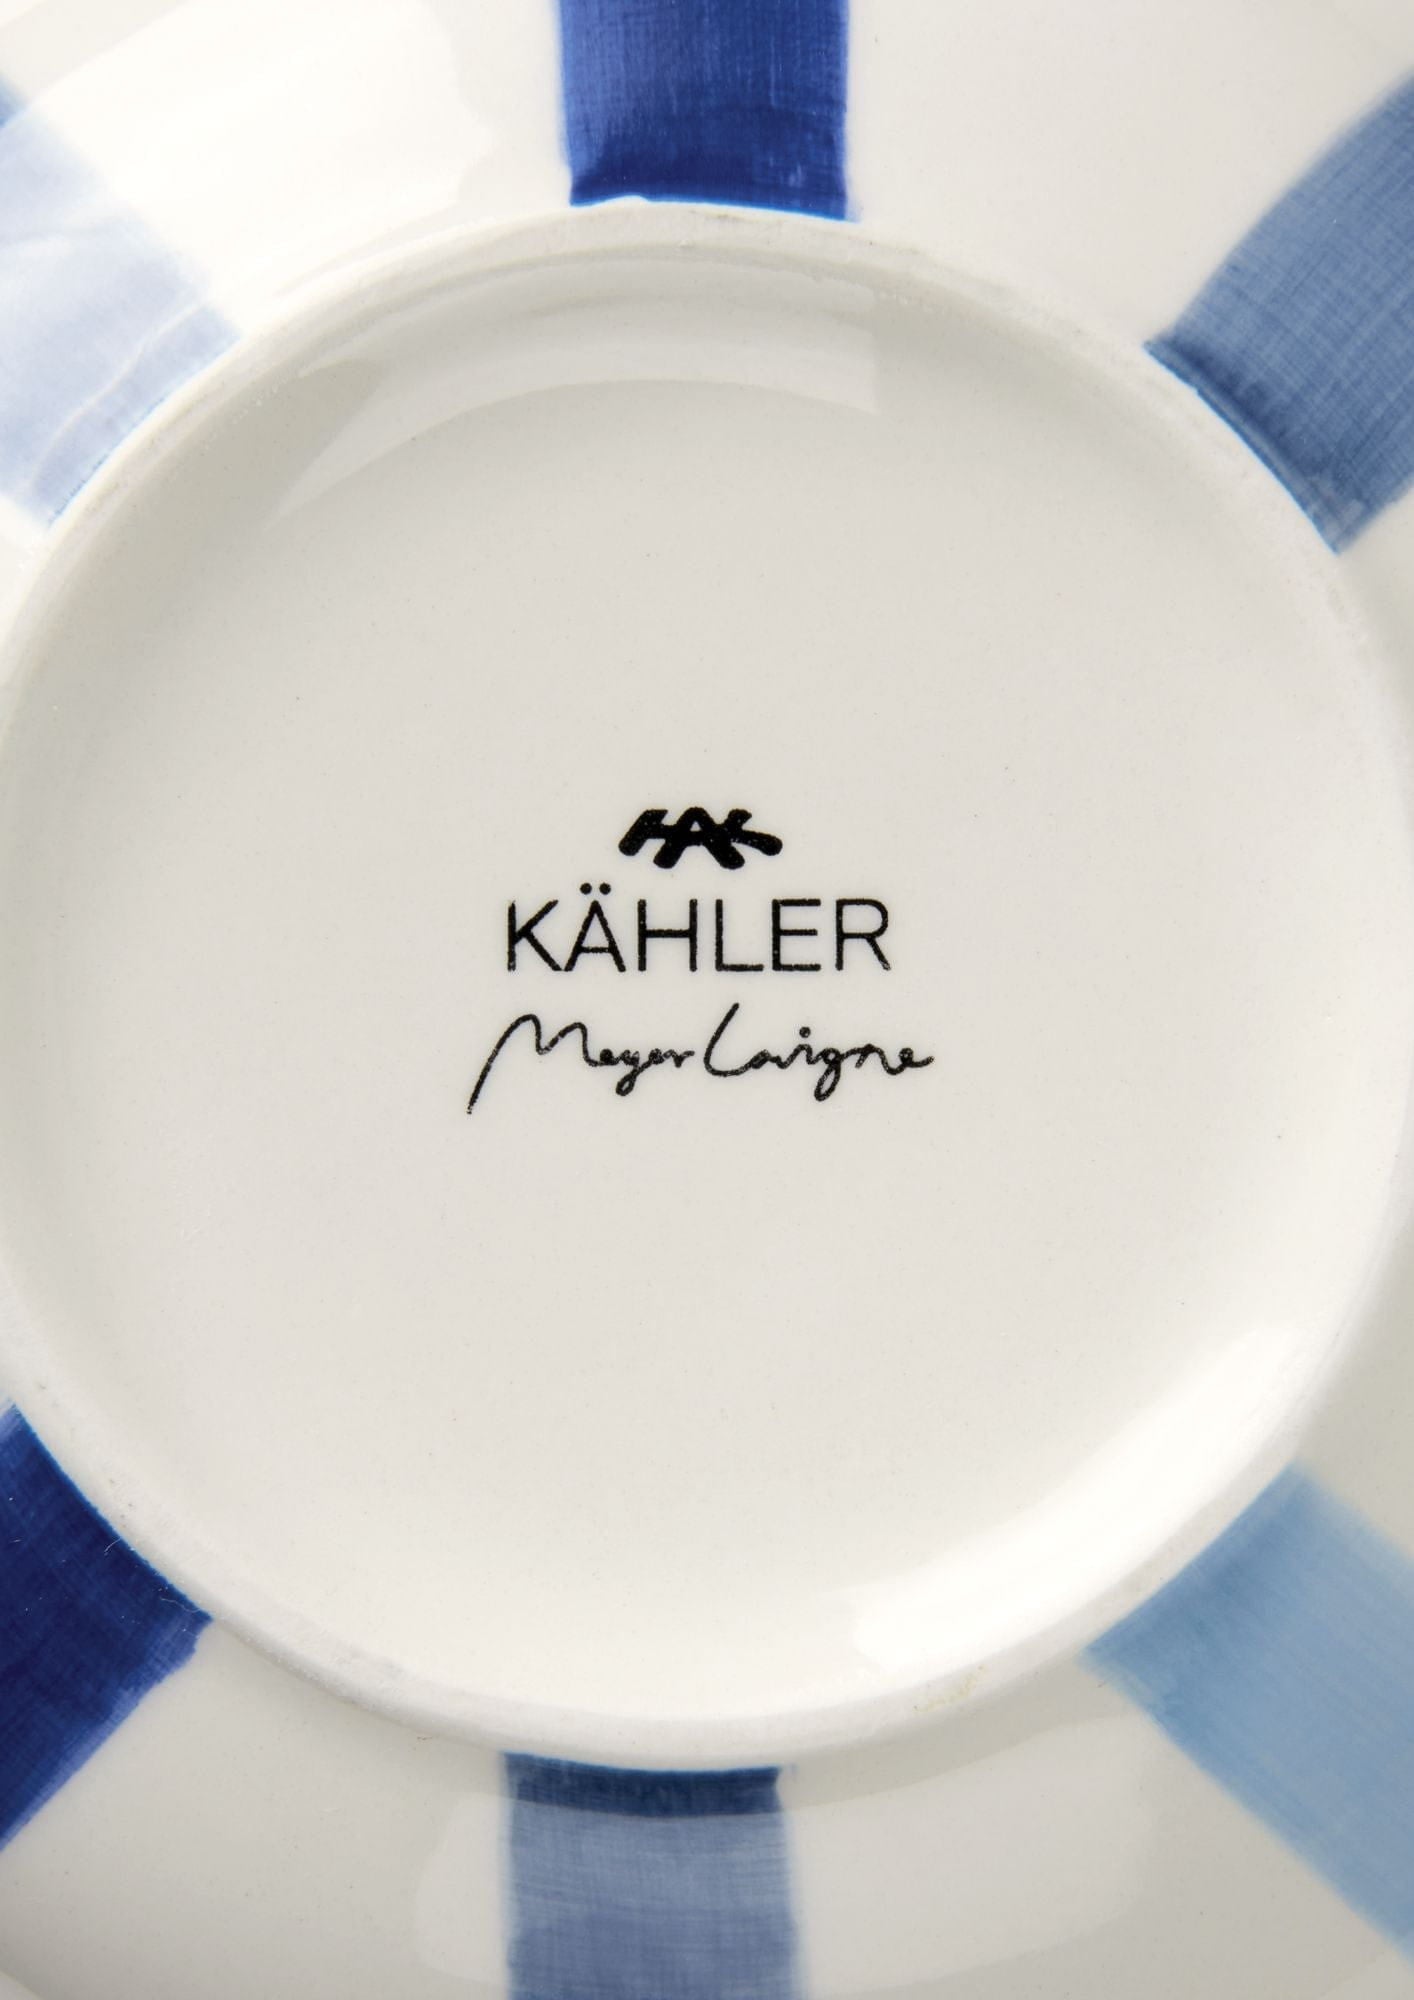 Wazon podpisu Kähler 20 cm, niebieski